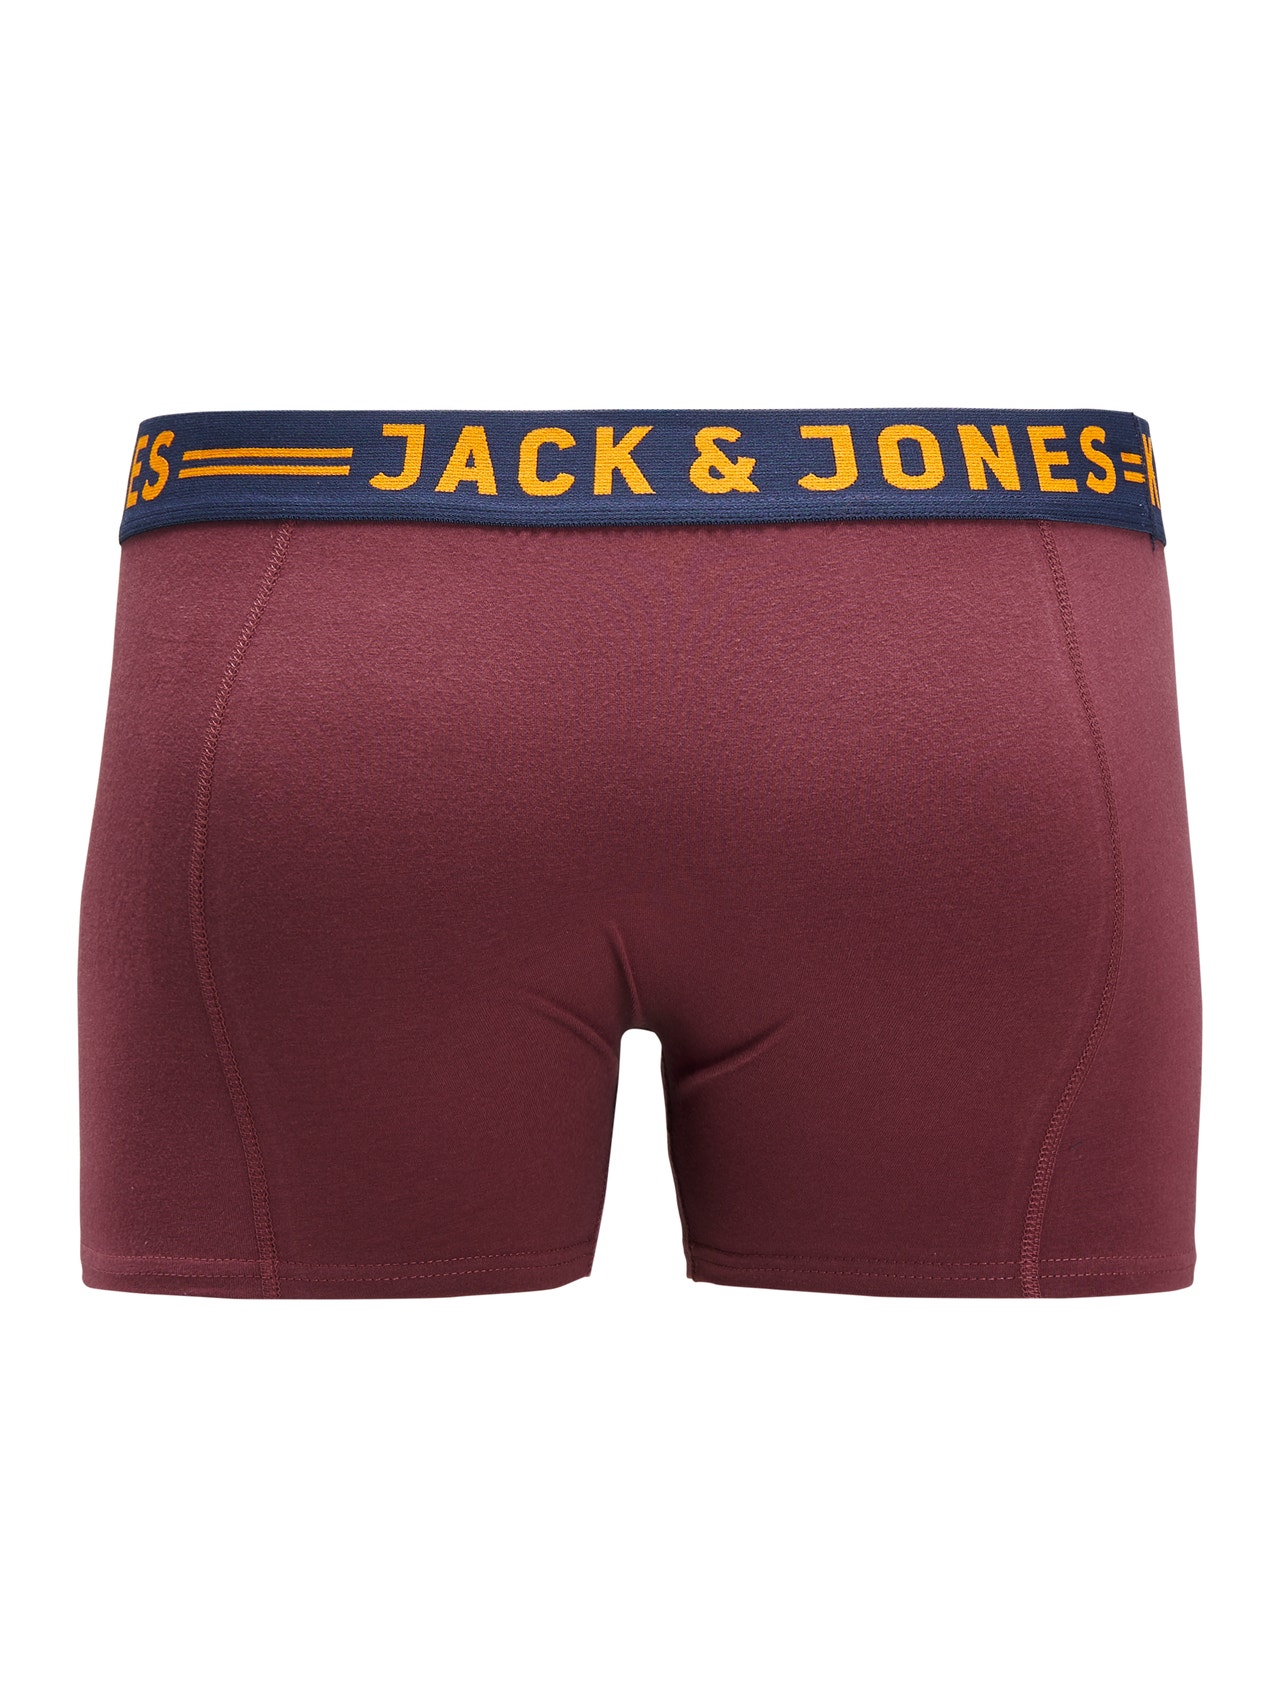 Jack & Jones Plus Size Paquete de 3 Boxers -Burgundy - 12147592